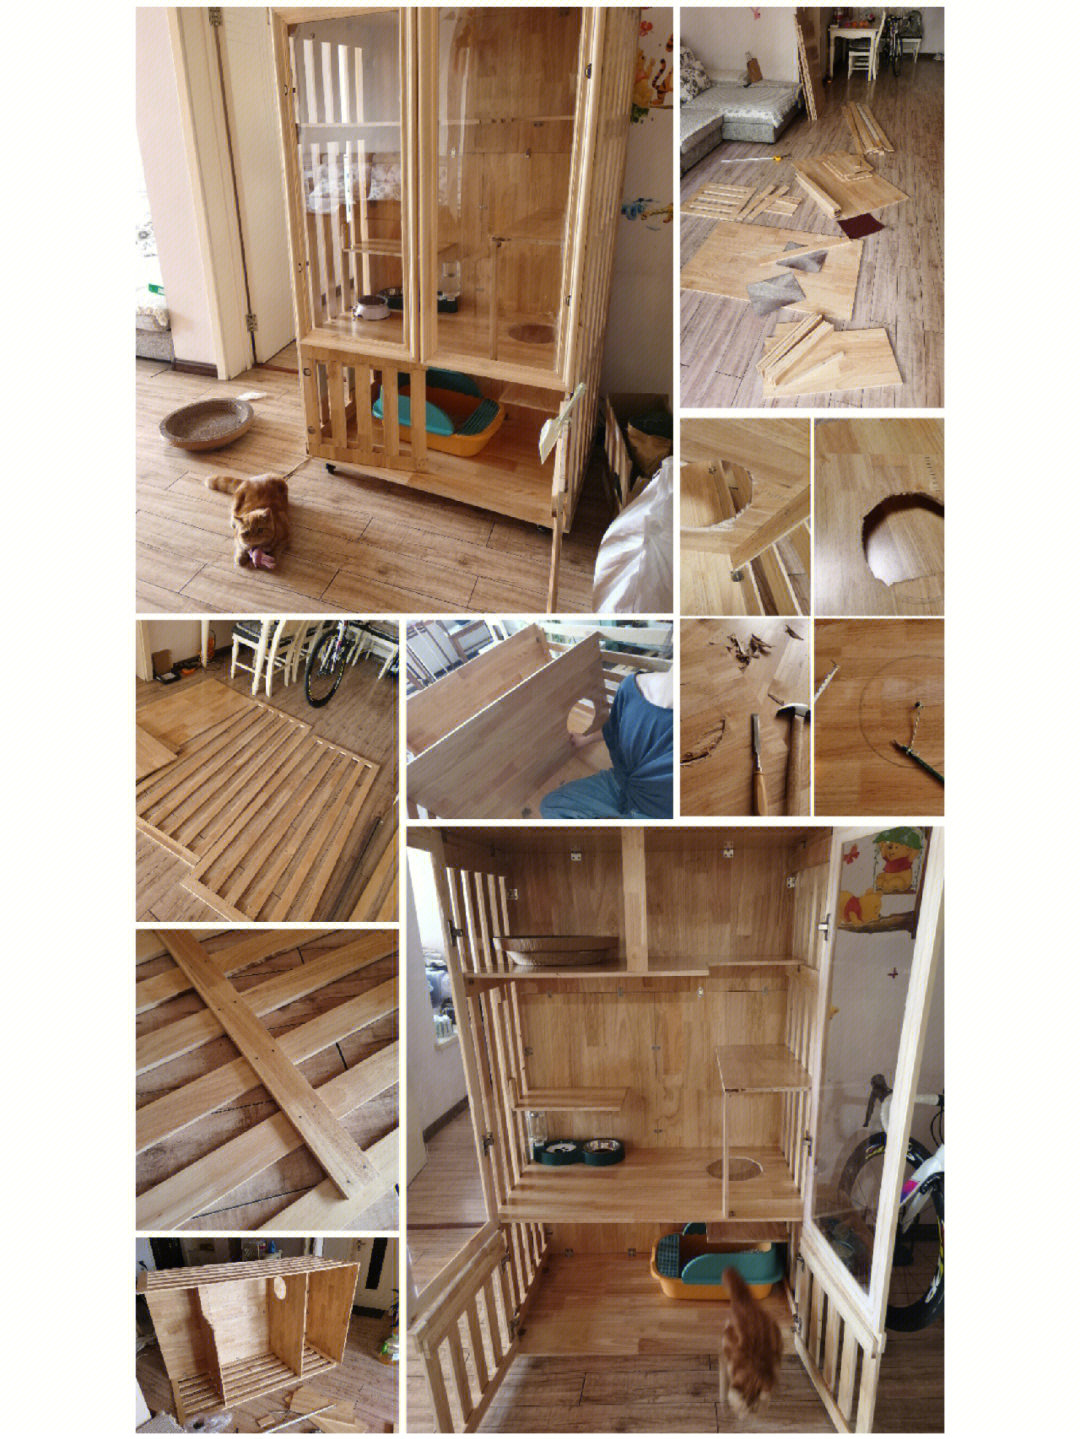 木板自制猫别墅尺寸图图片